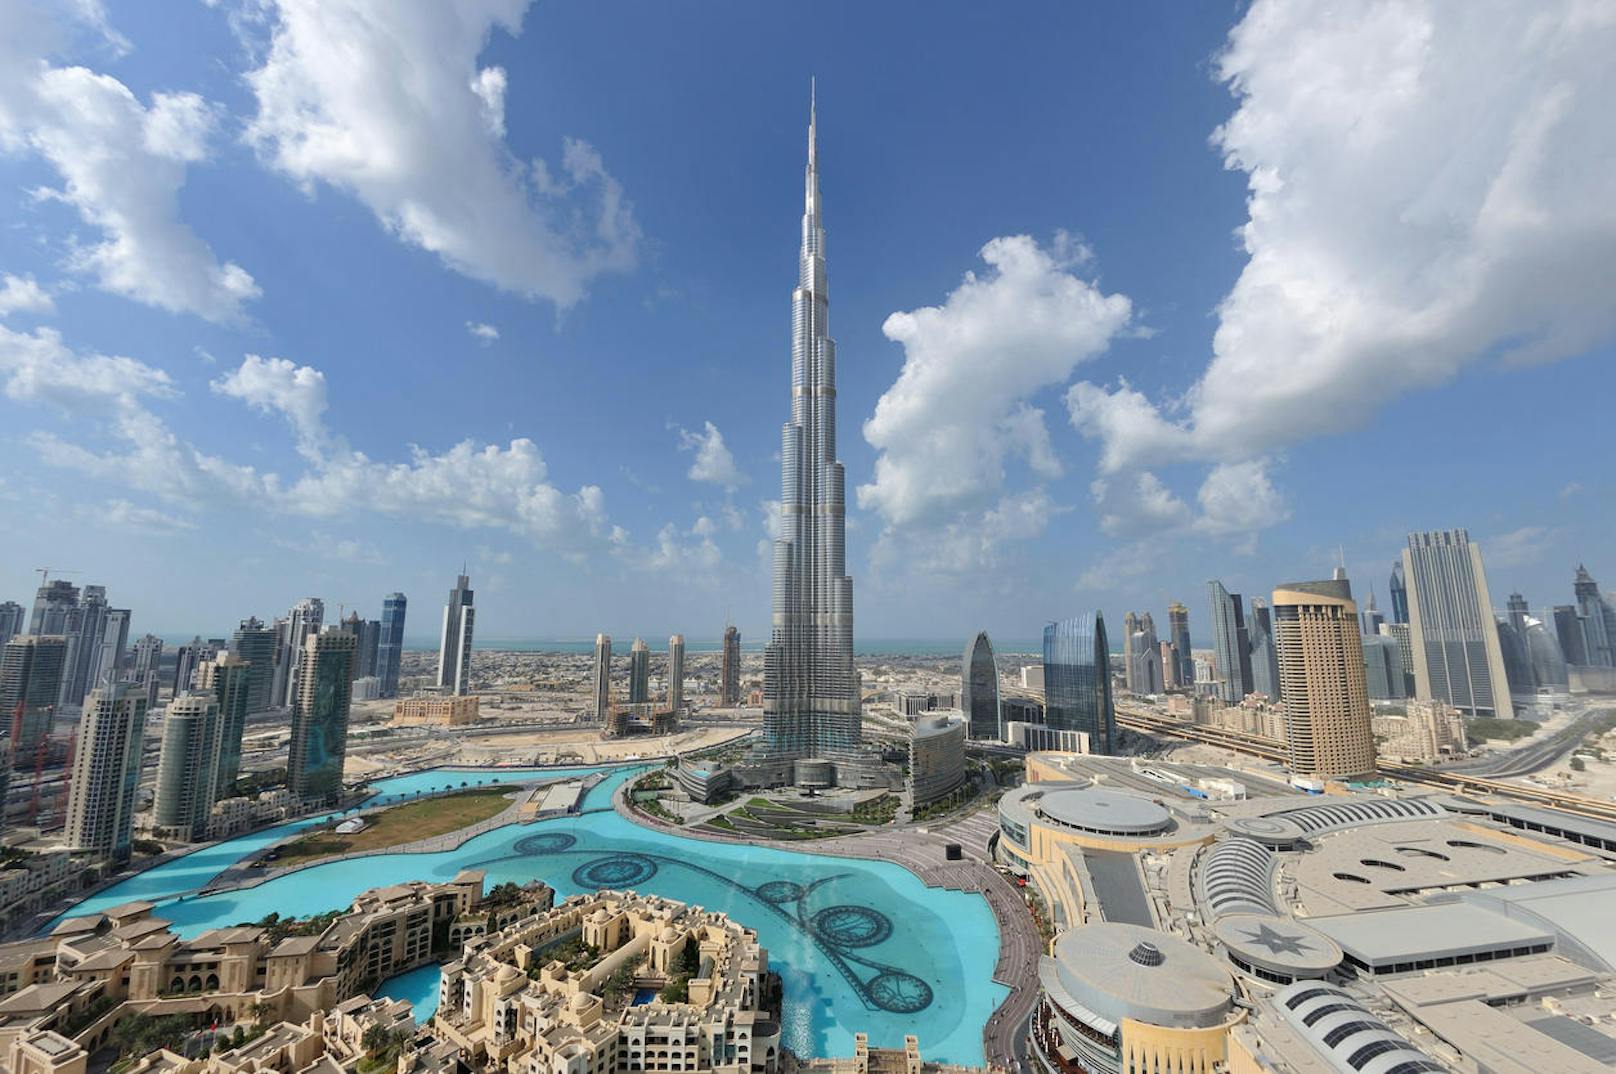 <b>Fakt 5:</b> Das Burj Khalifa in Dubai ist die Sehenswürdigkeit, die weltweit am häufigsten auf Tripadvisor gebucht wurde.